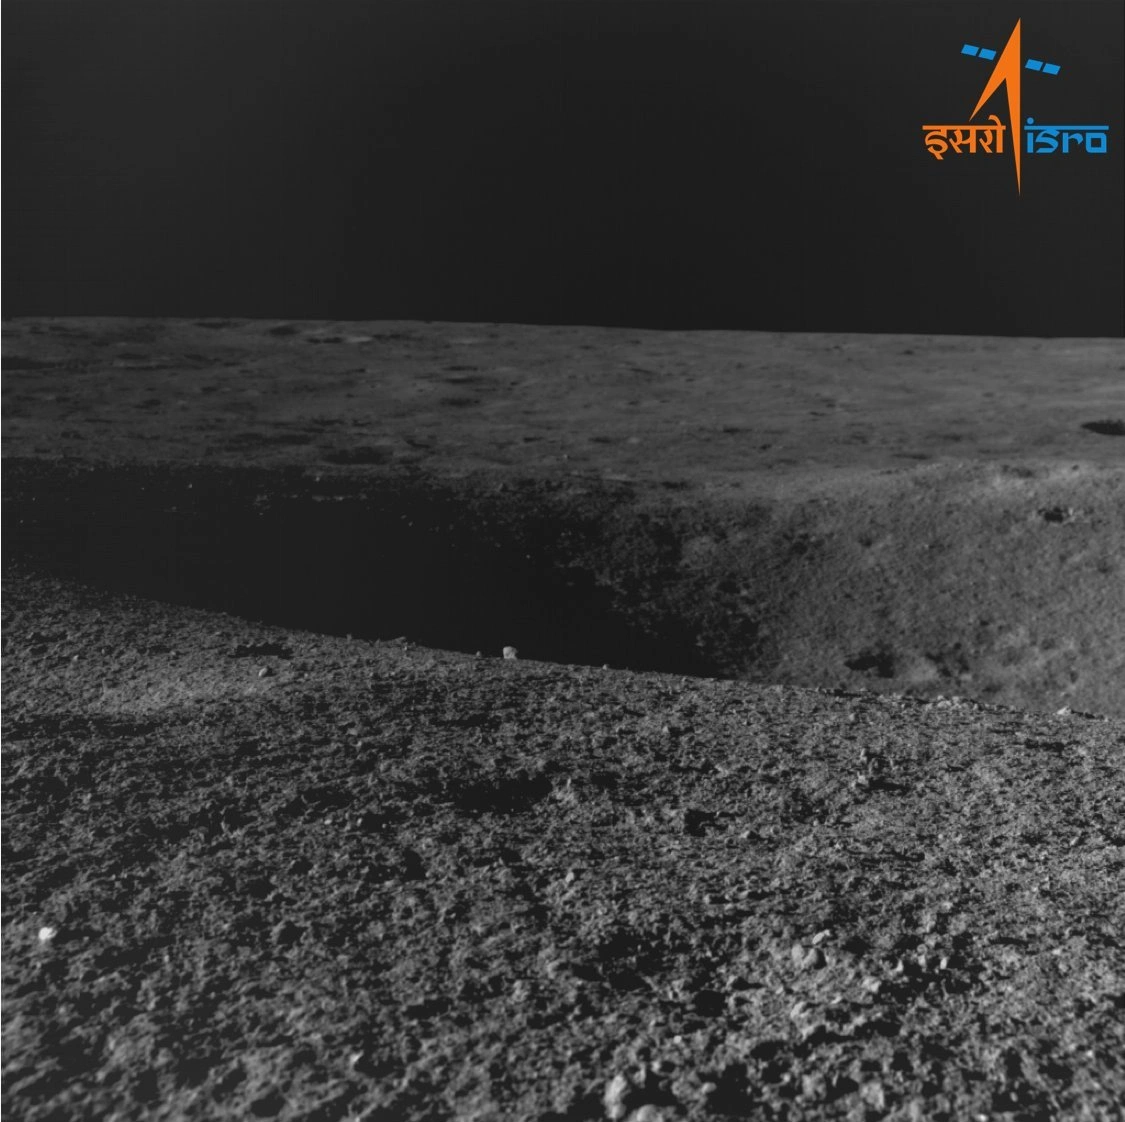 Індійський місяцехід Pragyan надіслав на Землю свої перші фотографії Місяця (фото)